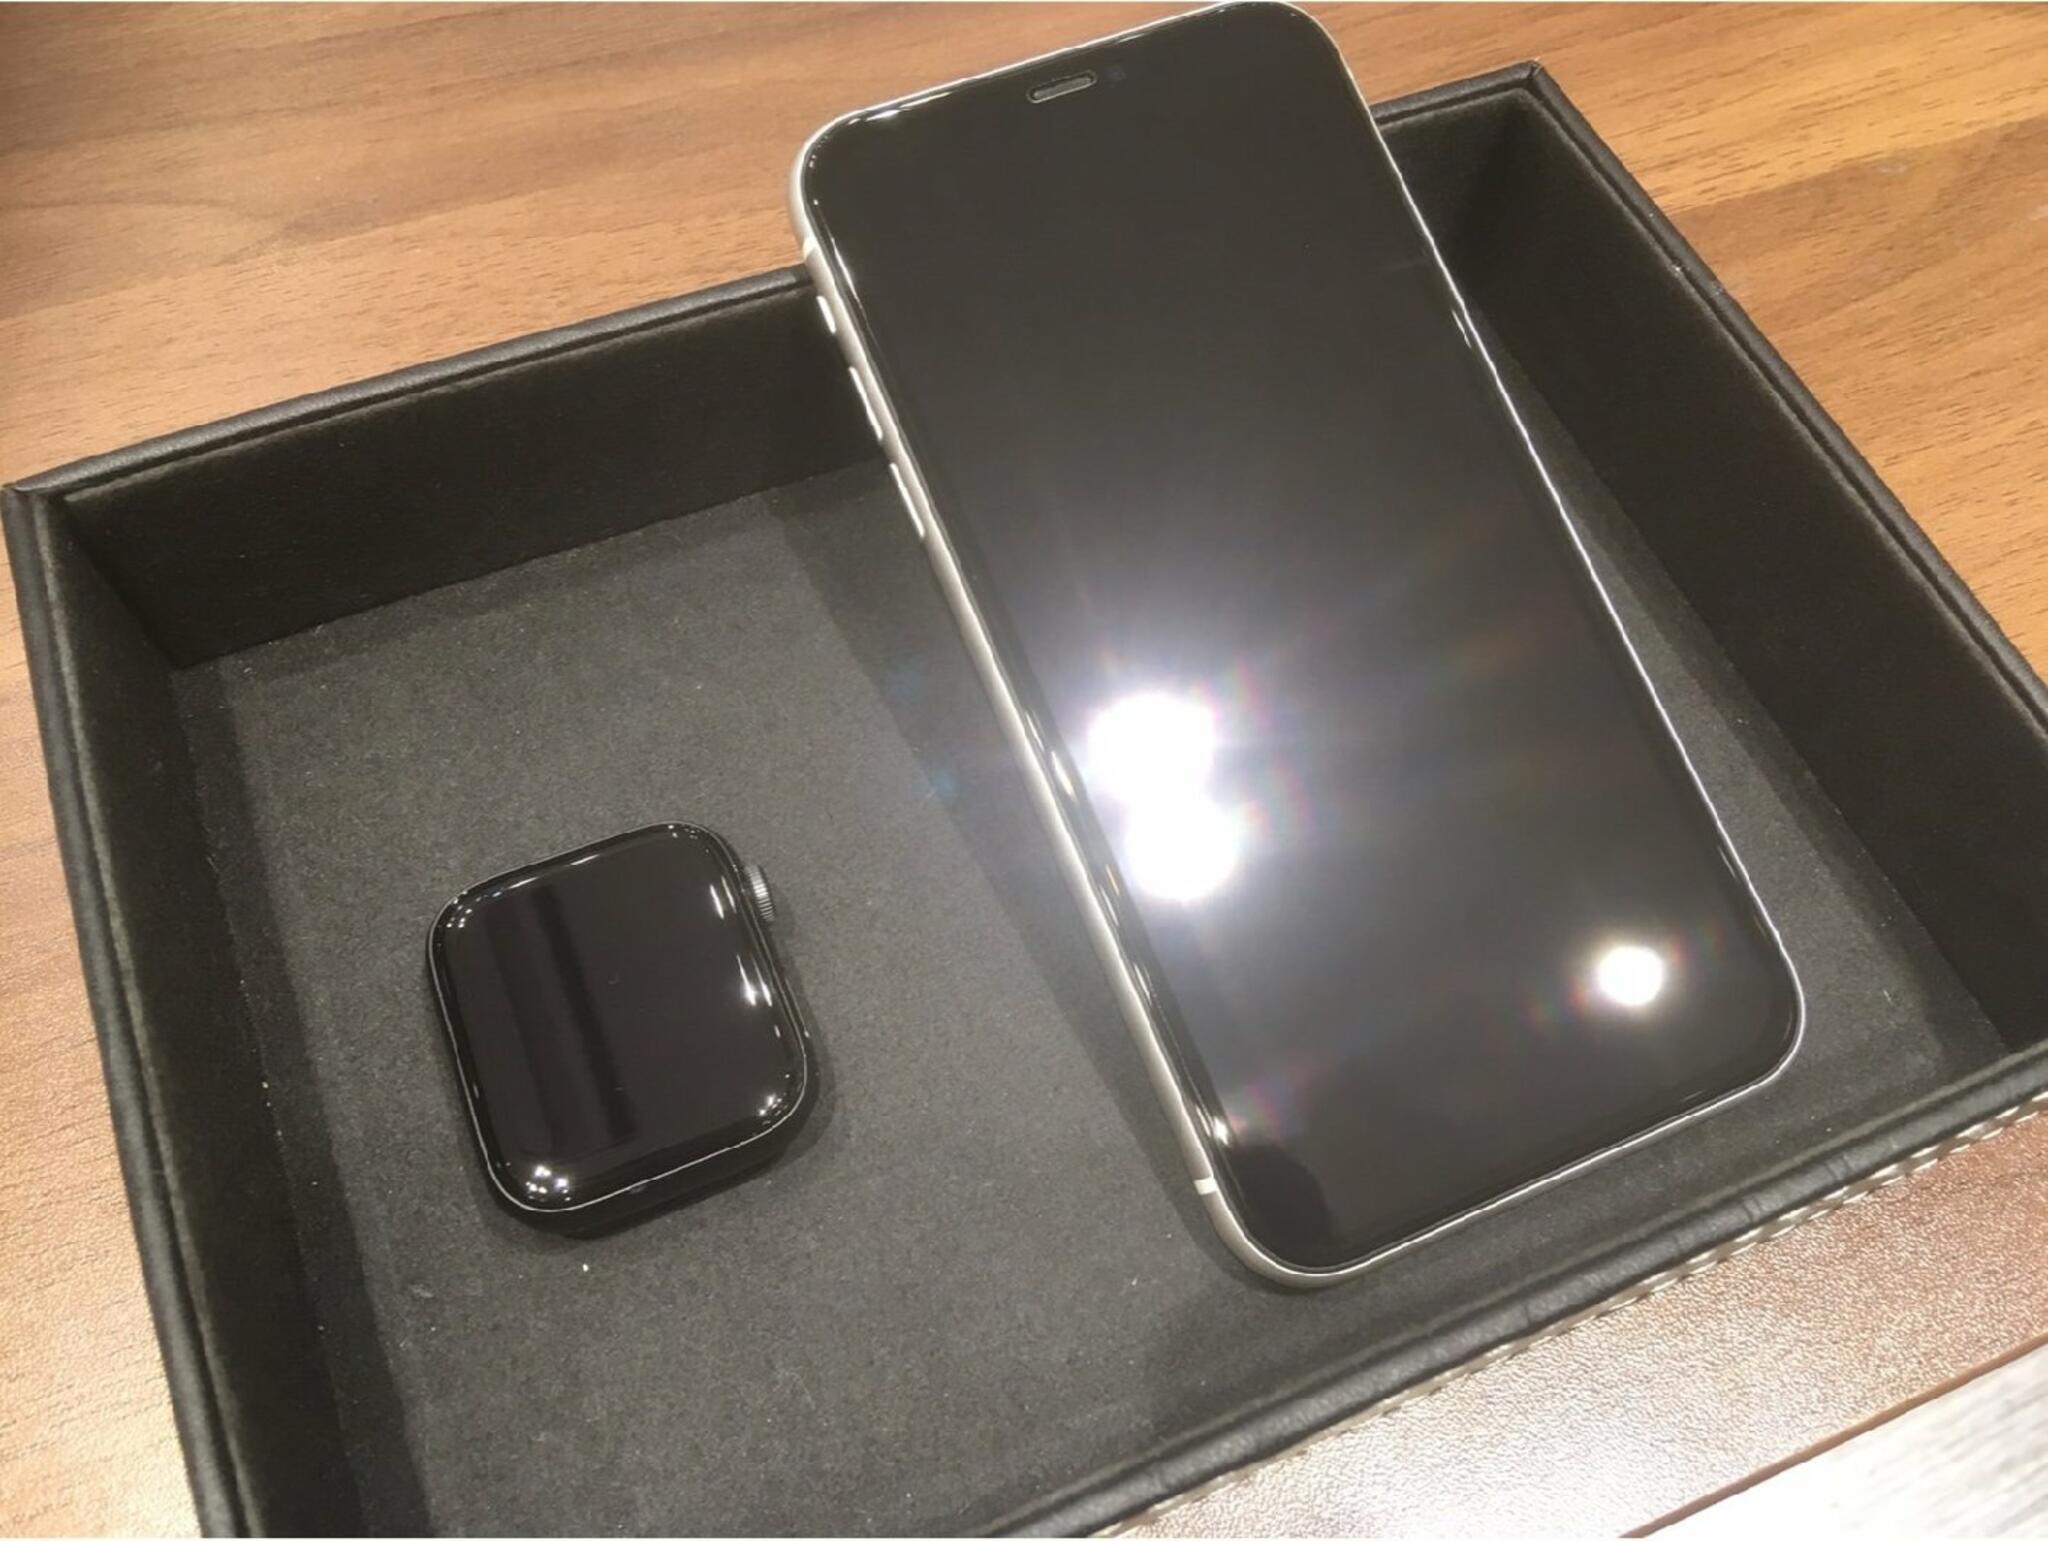 iPhone・iPad・Switch修理店 スマートクール イオンモール広島祇園店からのお知らせ( iPhoneとAppleWatchをガラスコーティングしました )に関する写真